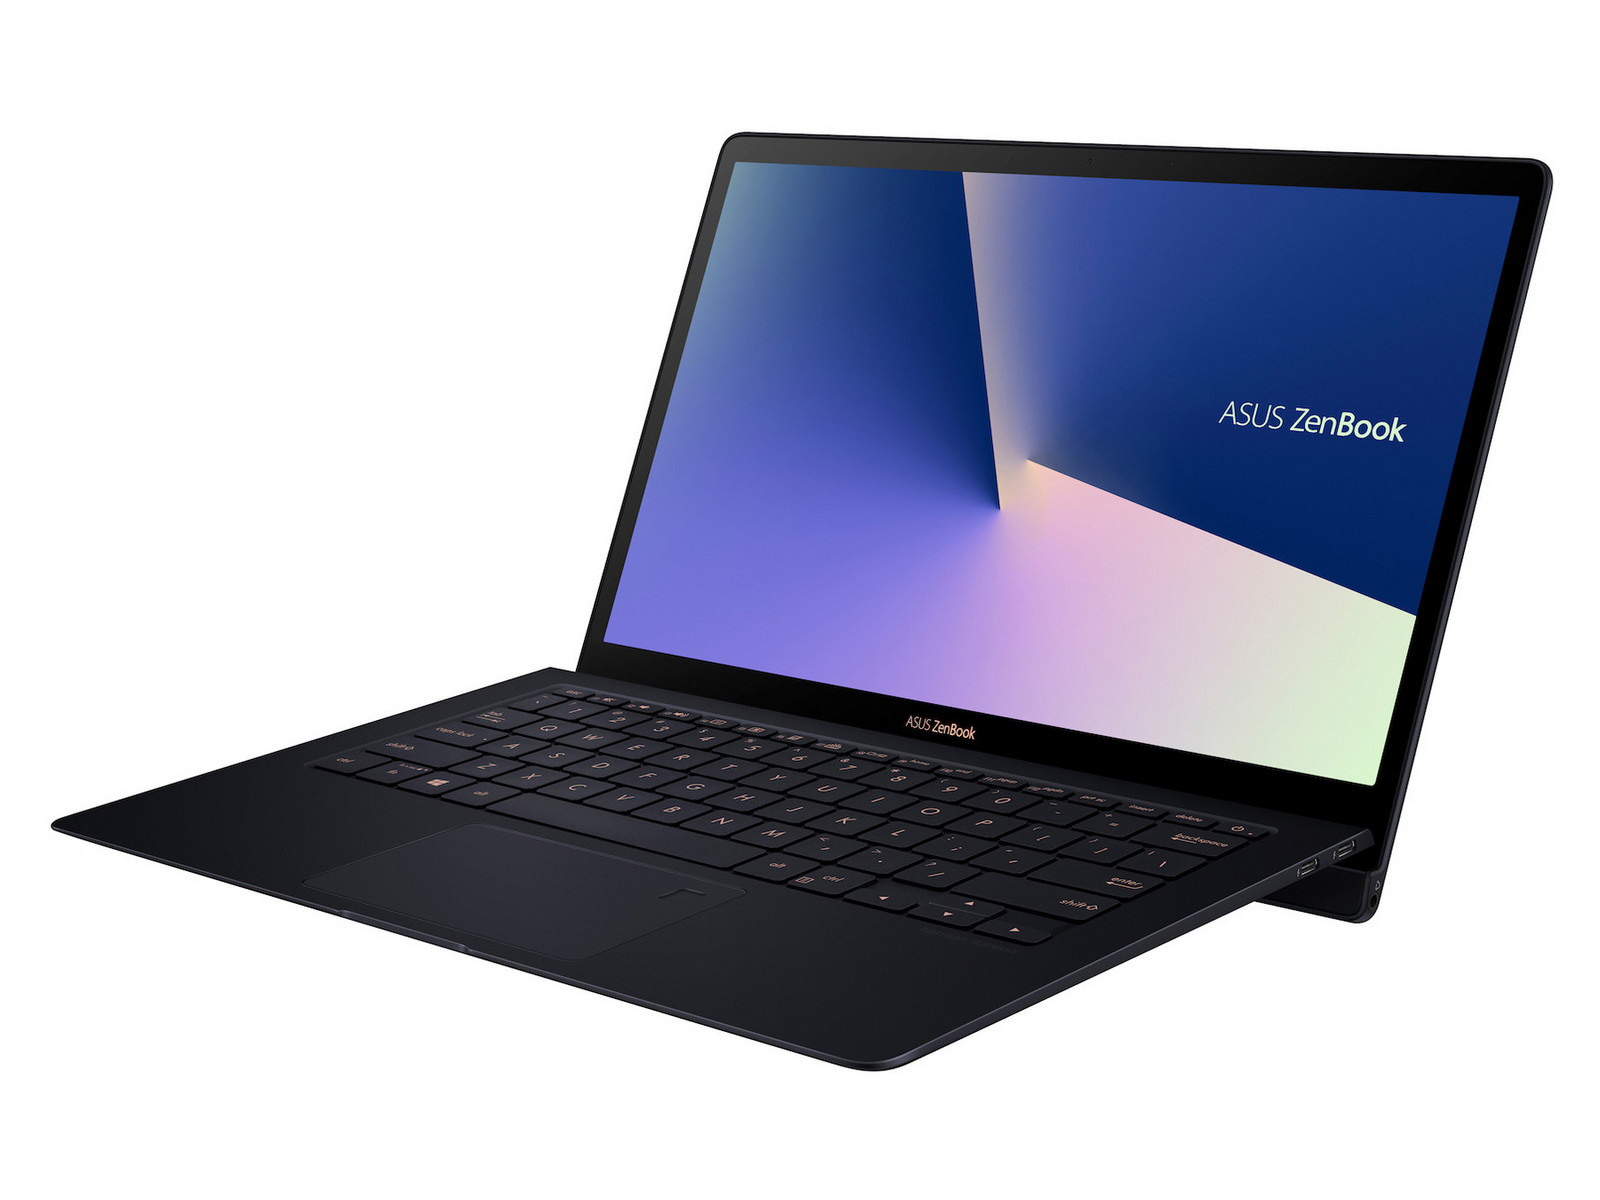 forsvinde kim mynte Asus ZenBook S UX391U - Notebookcheck.net External Reviews